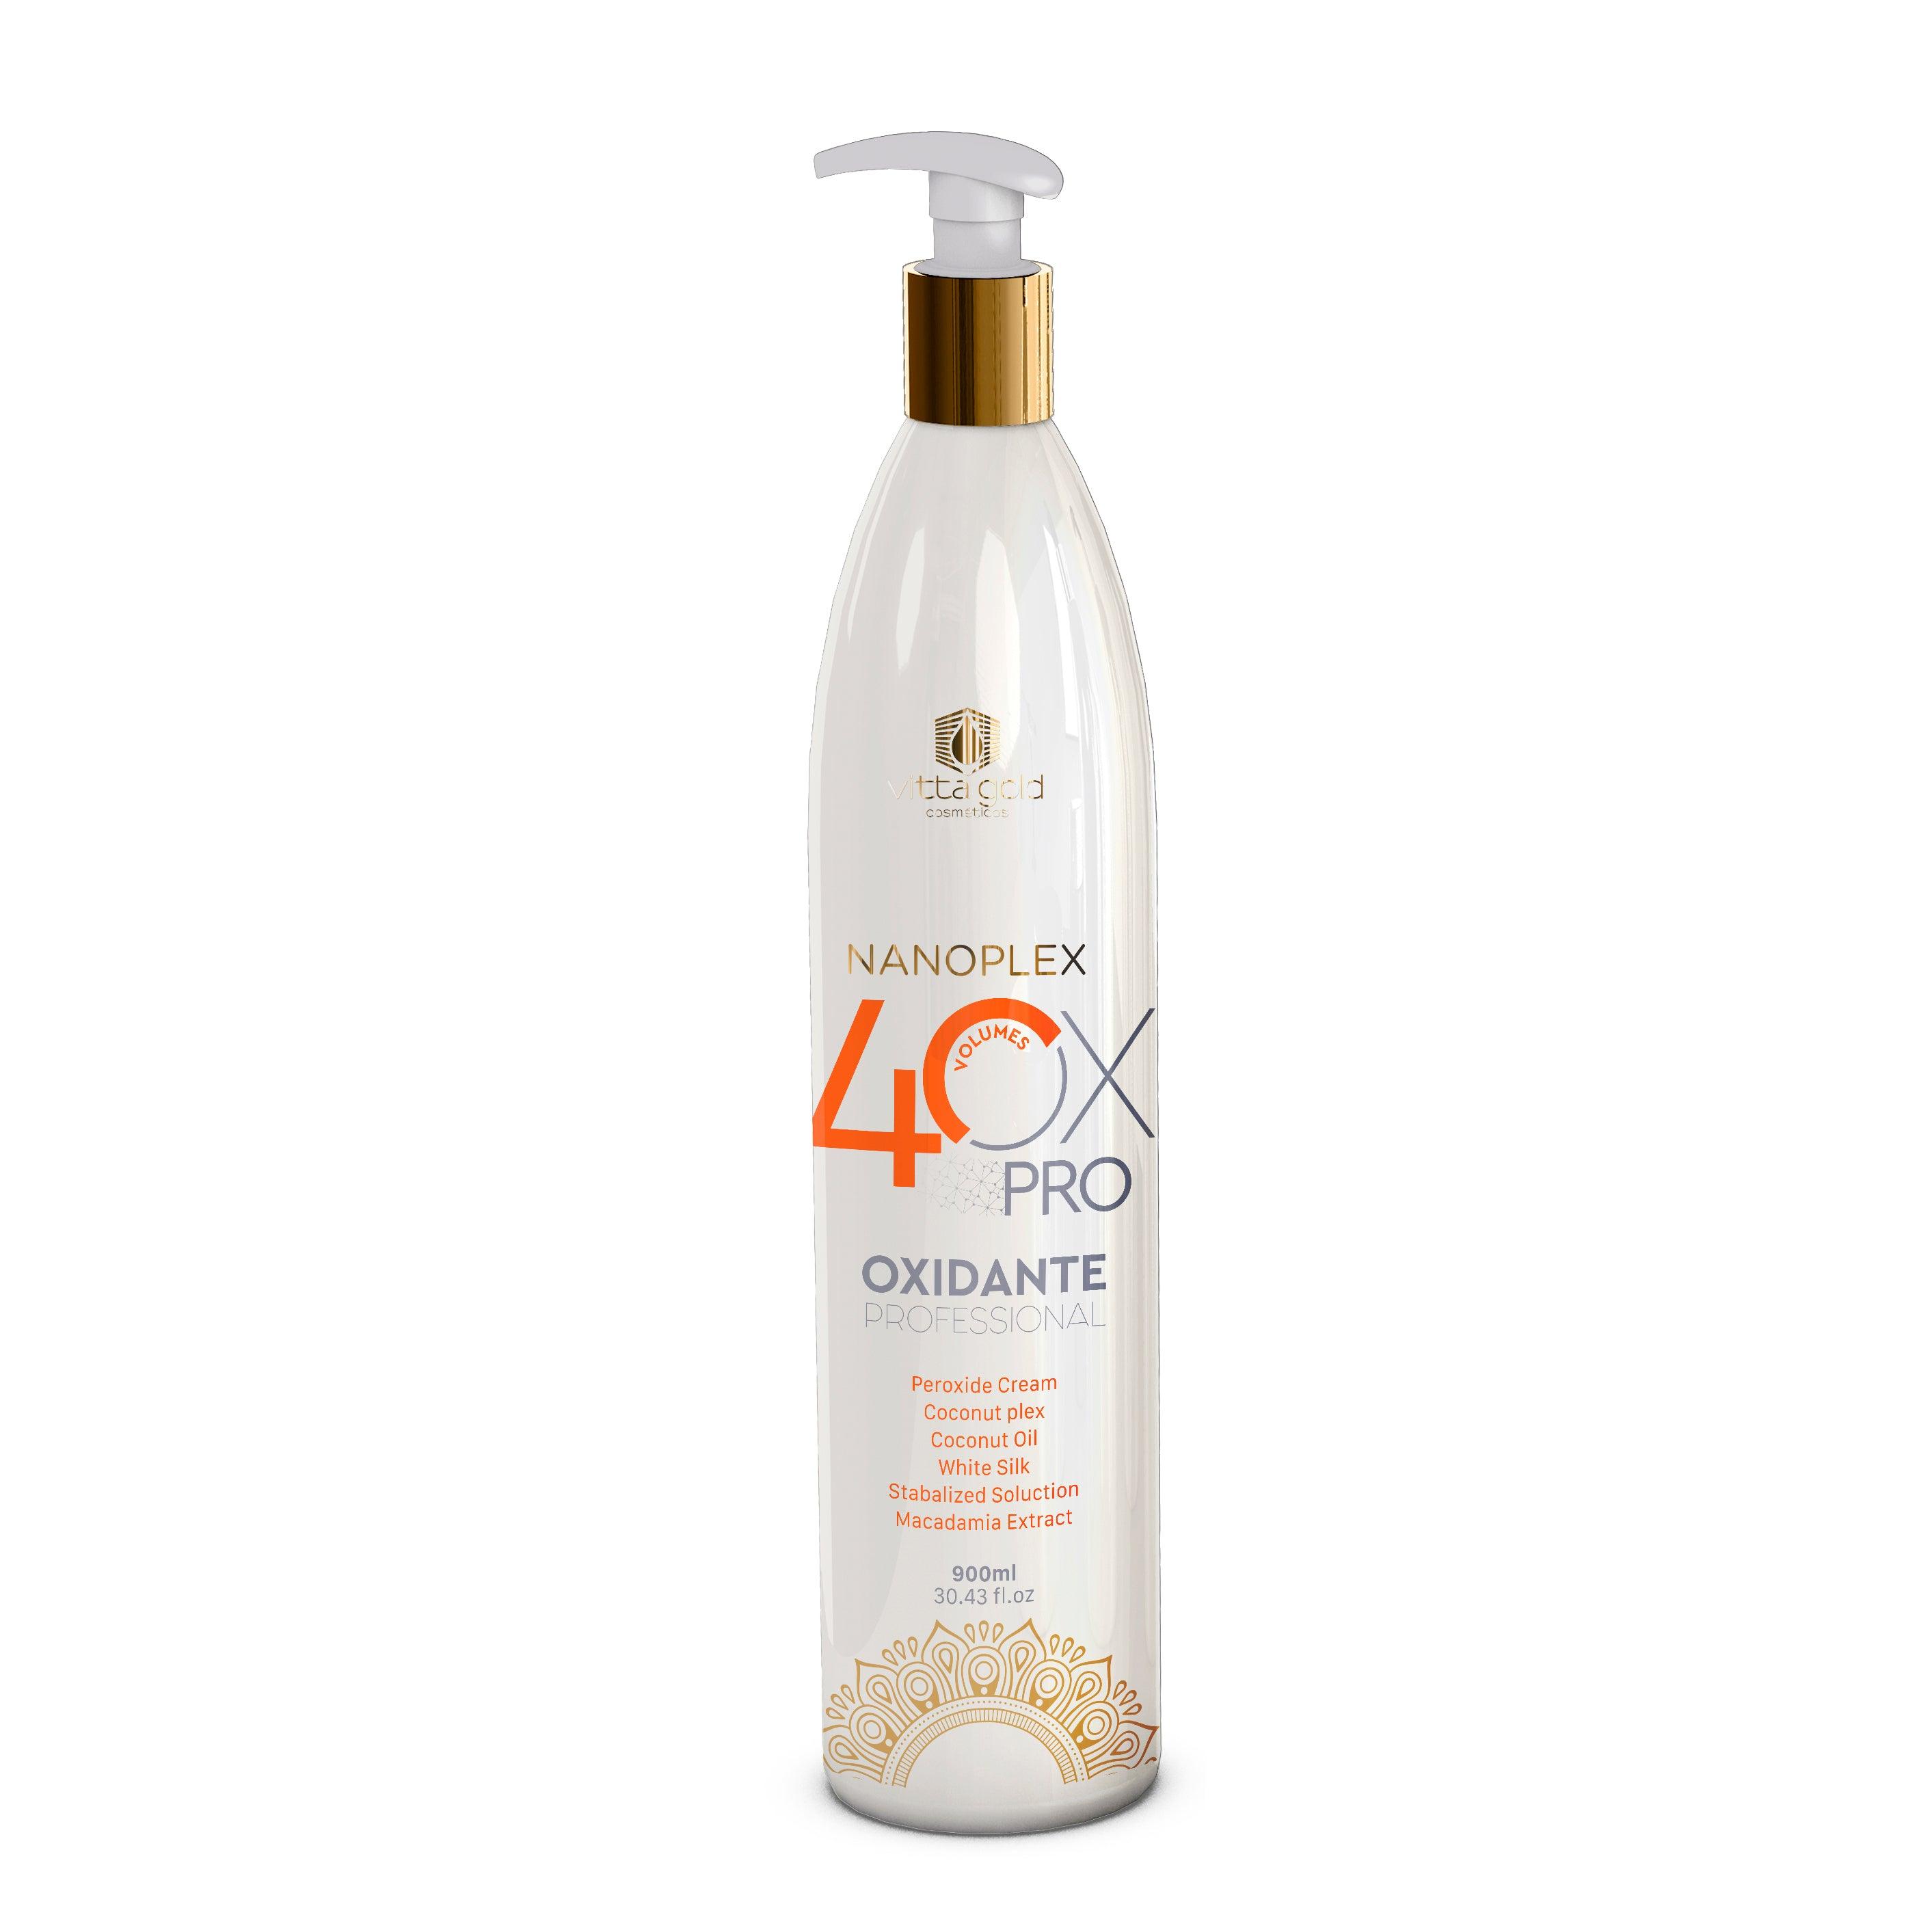 Nanoplex Peroxyde Crème OX - 40vol. Crème professionnelle oxydante pour les cheveux -Proxide-Vitta Gold